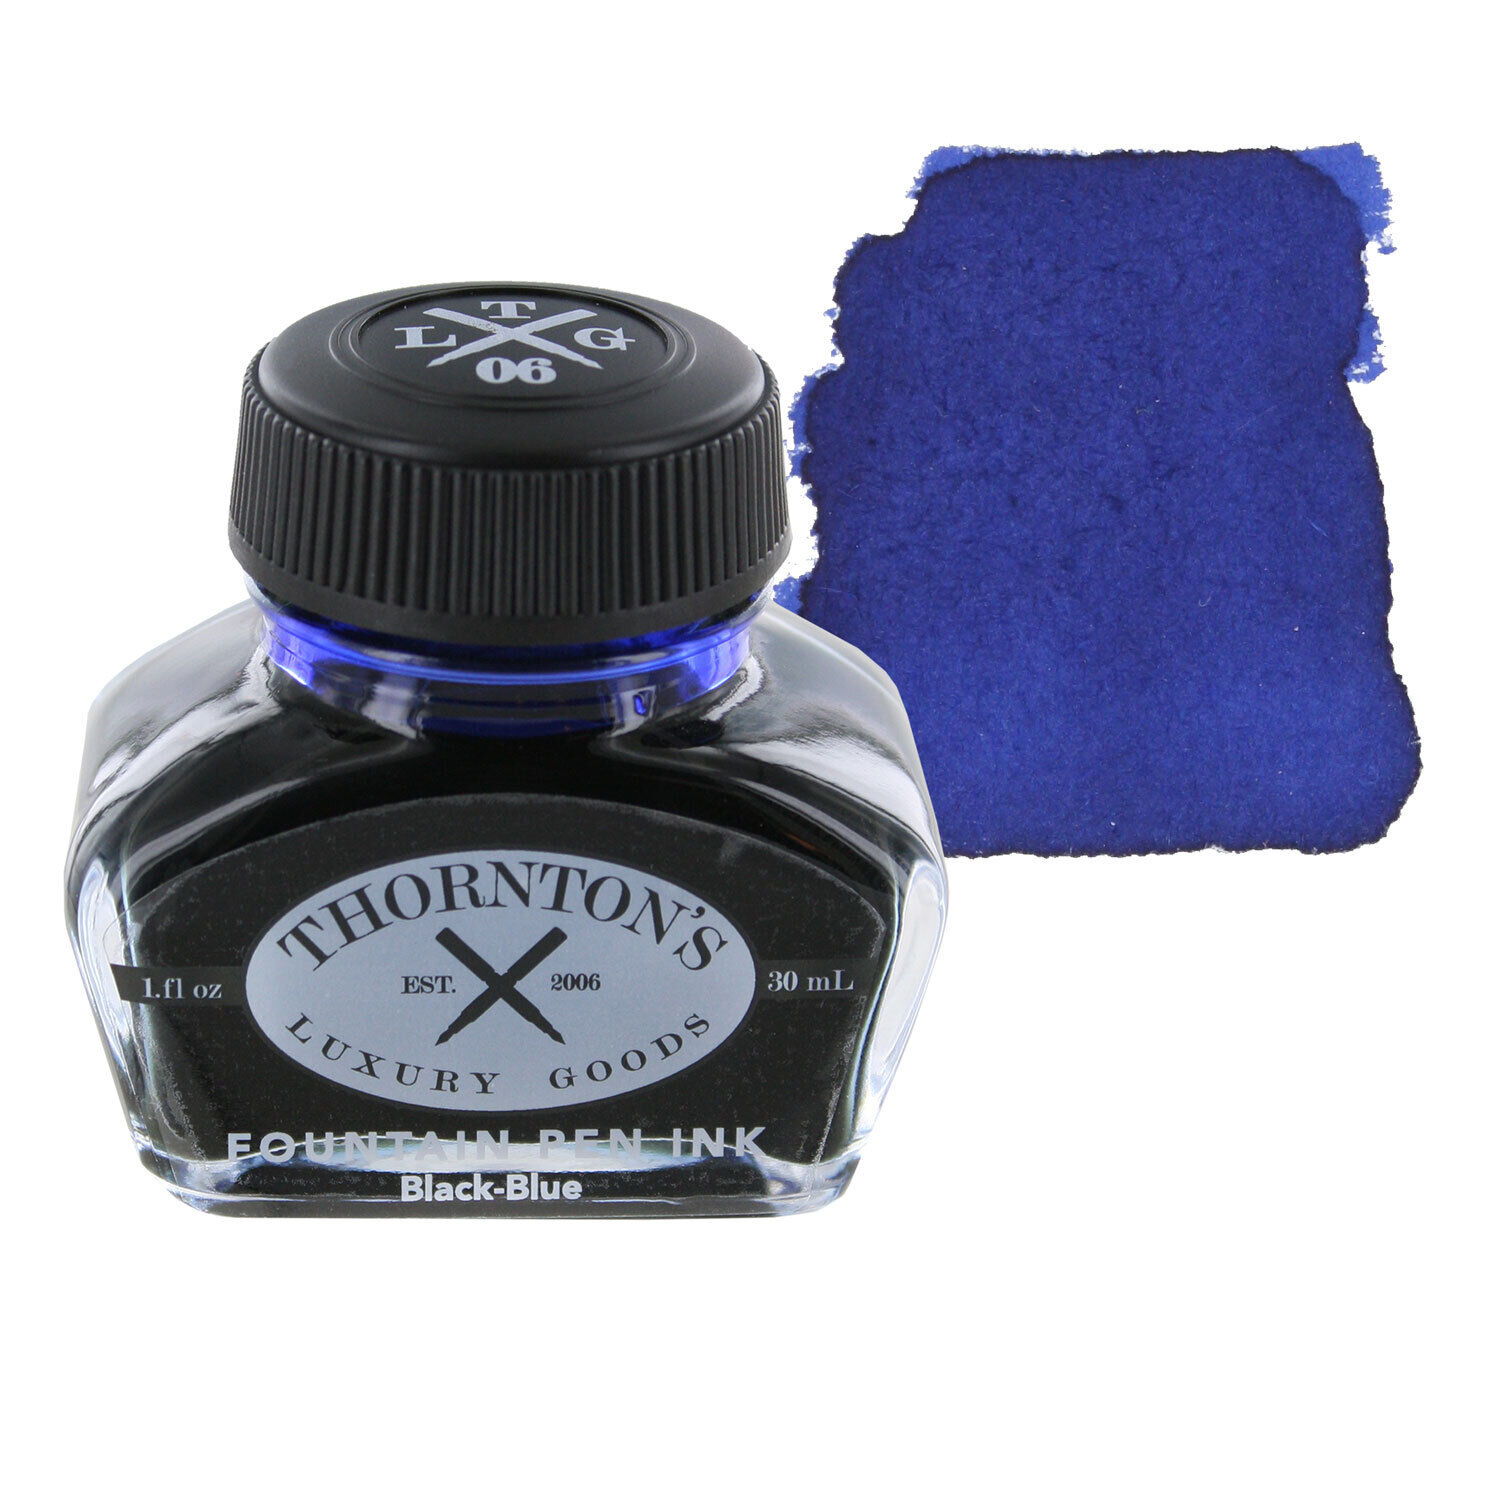 Thornton's Luxury Goods Fountain Pen Ink Bottle, 30ml - Black-Blue, 3 Pack